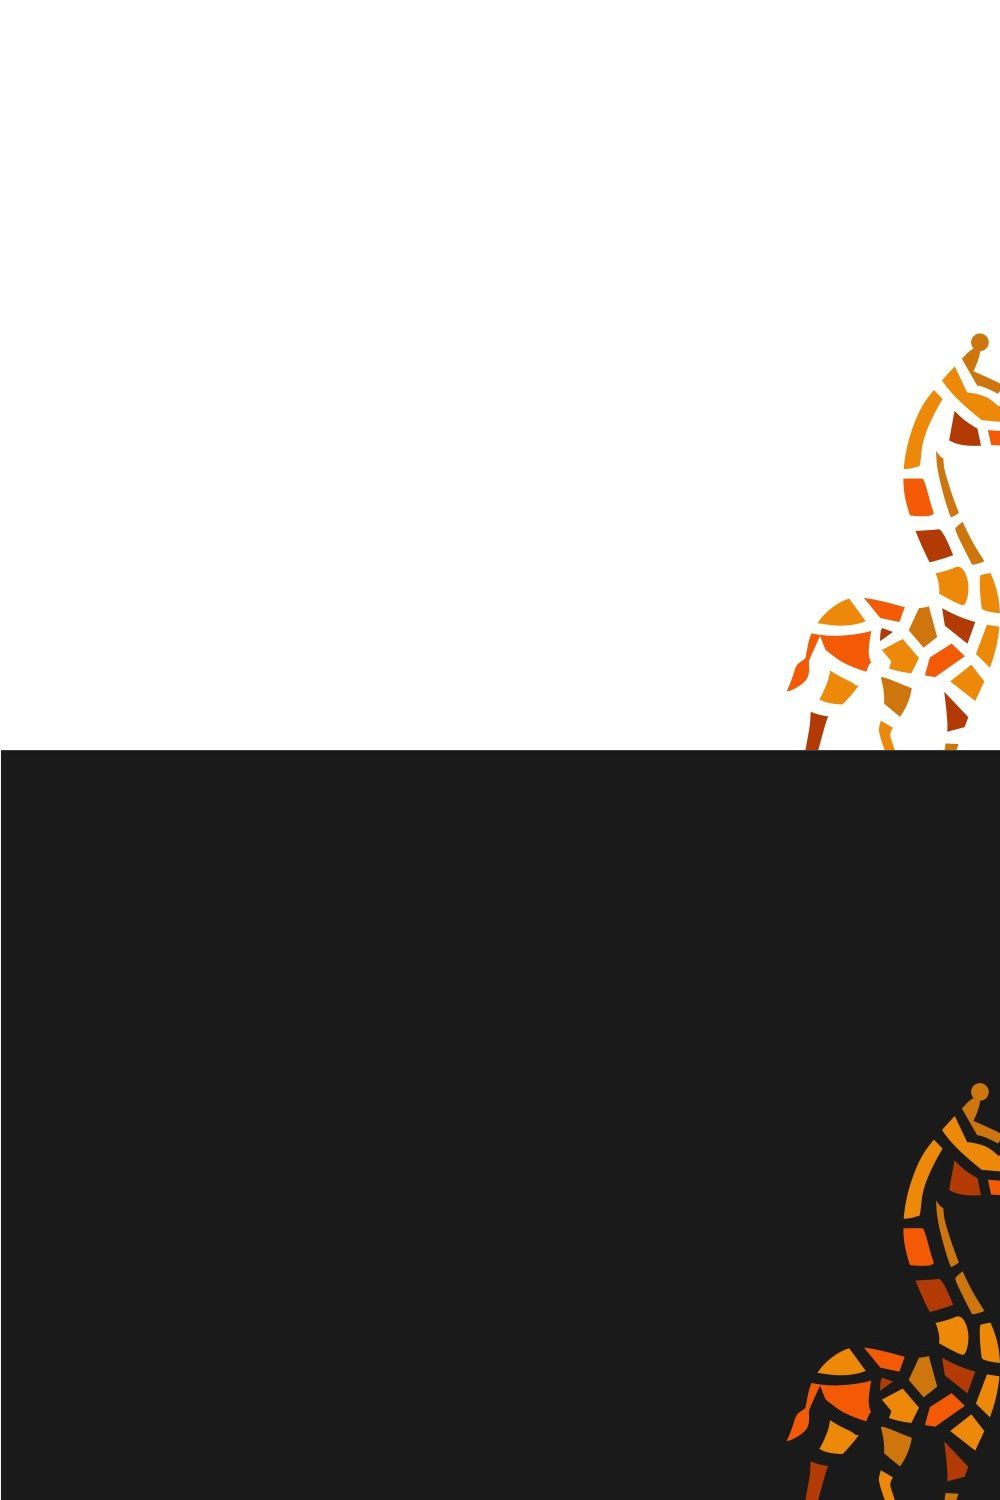 Giraffe Logo pinterest preview image.